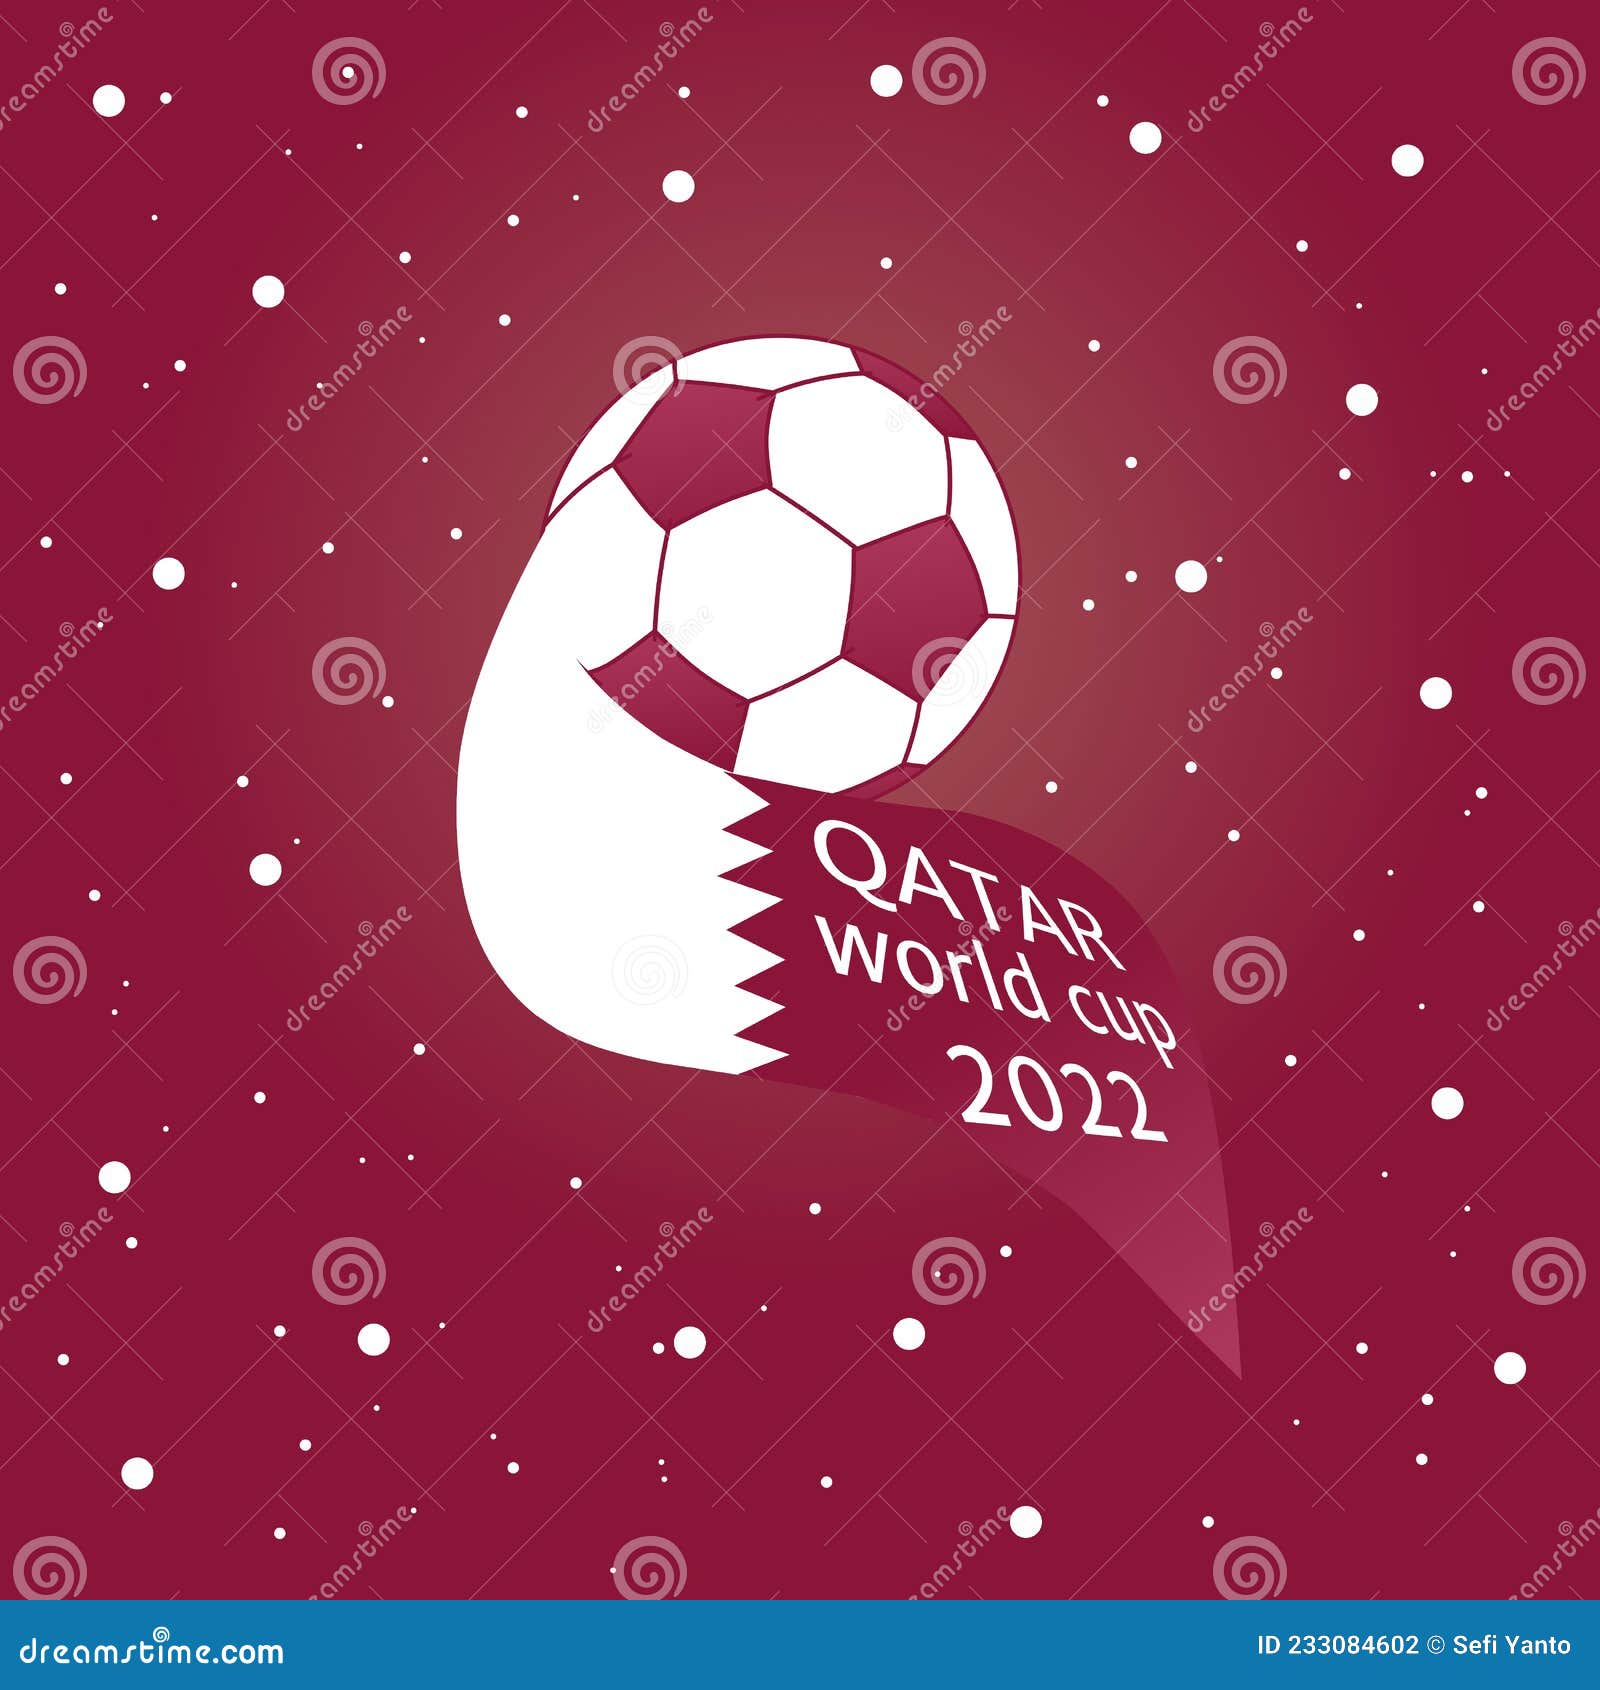 Qatar World Cup 2022 sẽ là một cơ hội tuyệt vời cho những người đam mê bóng đá và đi du lịch. Hãy đắm mình vào những bức ảnh editoral tuyệt đẹp để thấy được sự hoành tráng của sự kiện này.